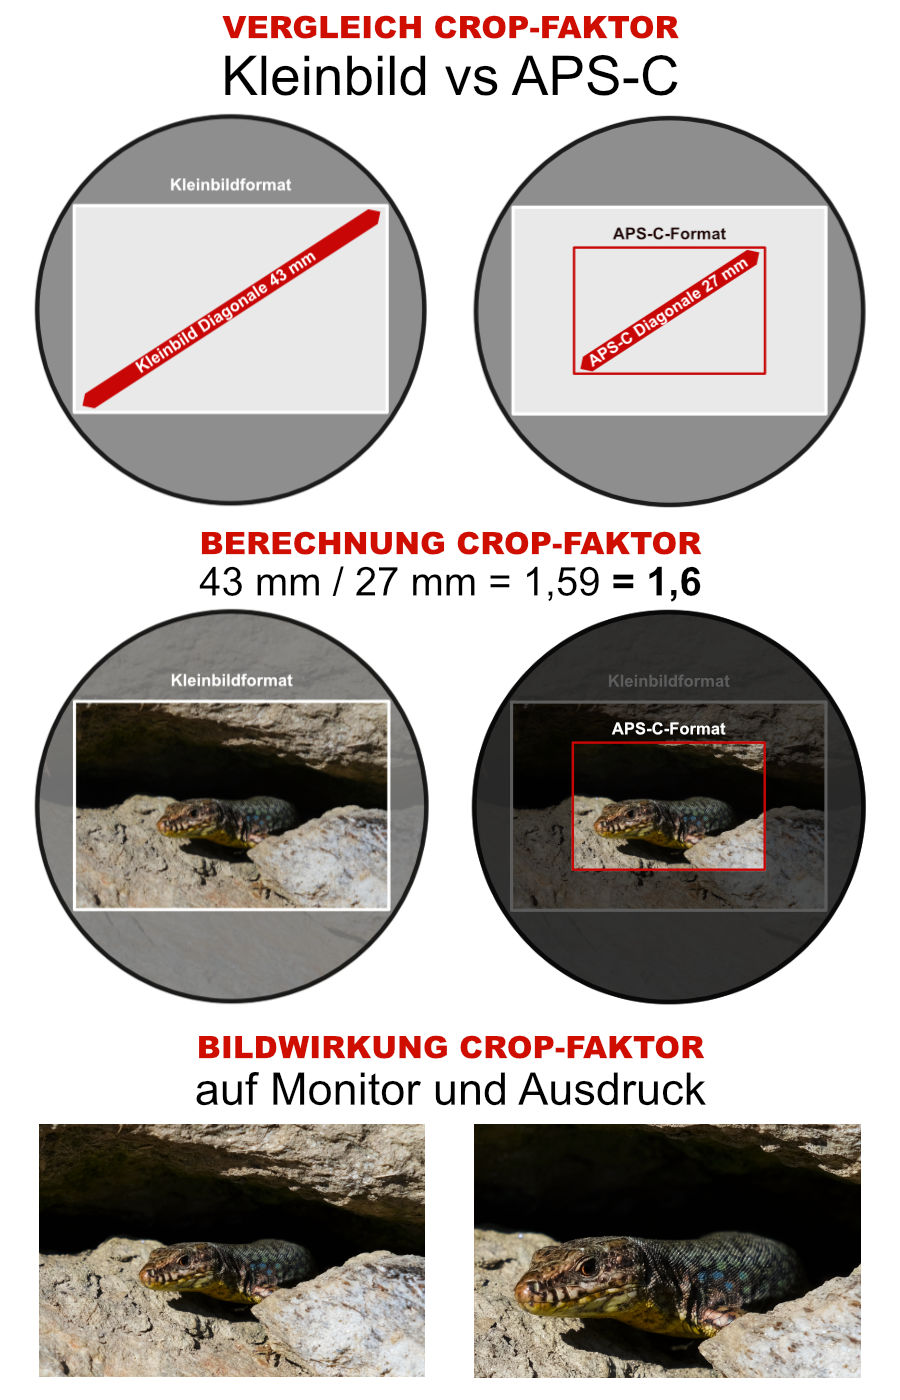 Crop-Faktor im Vergleich Kleinbildformat und APS-C-Sensor